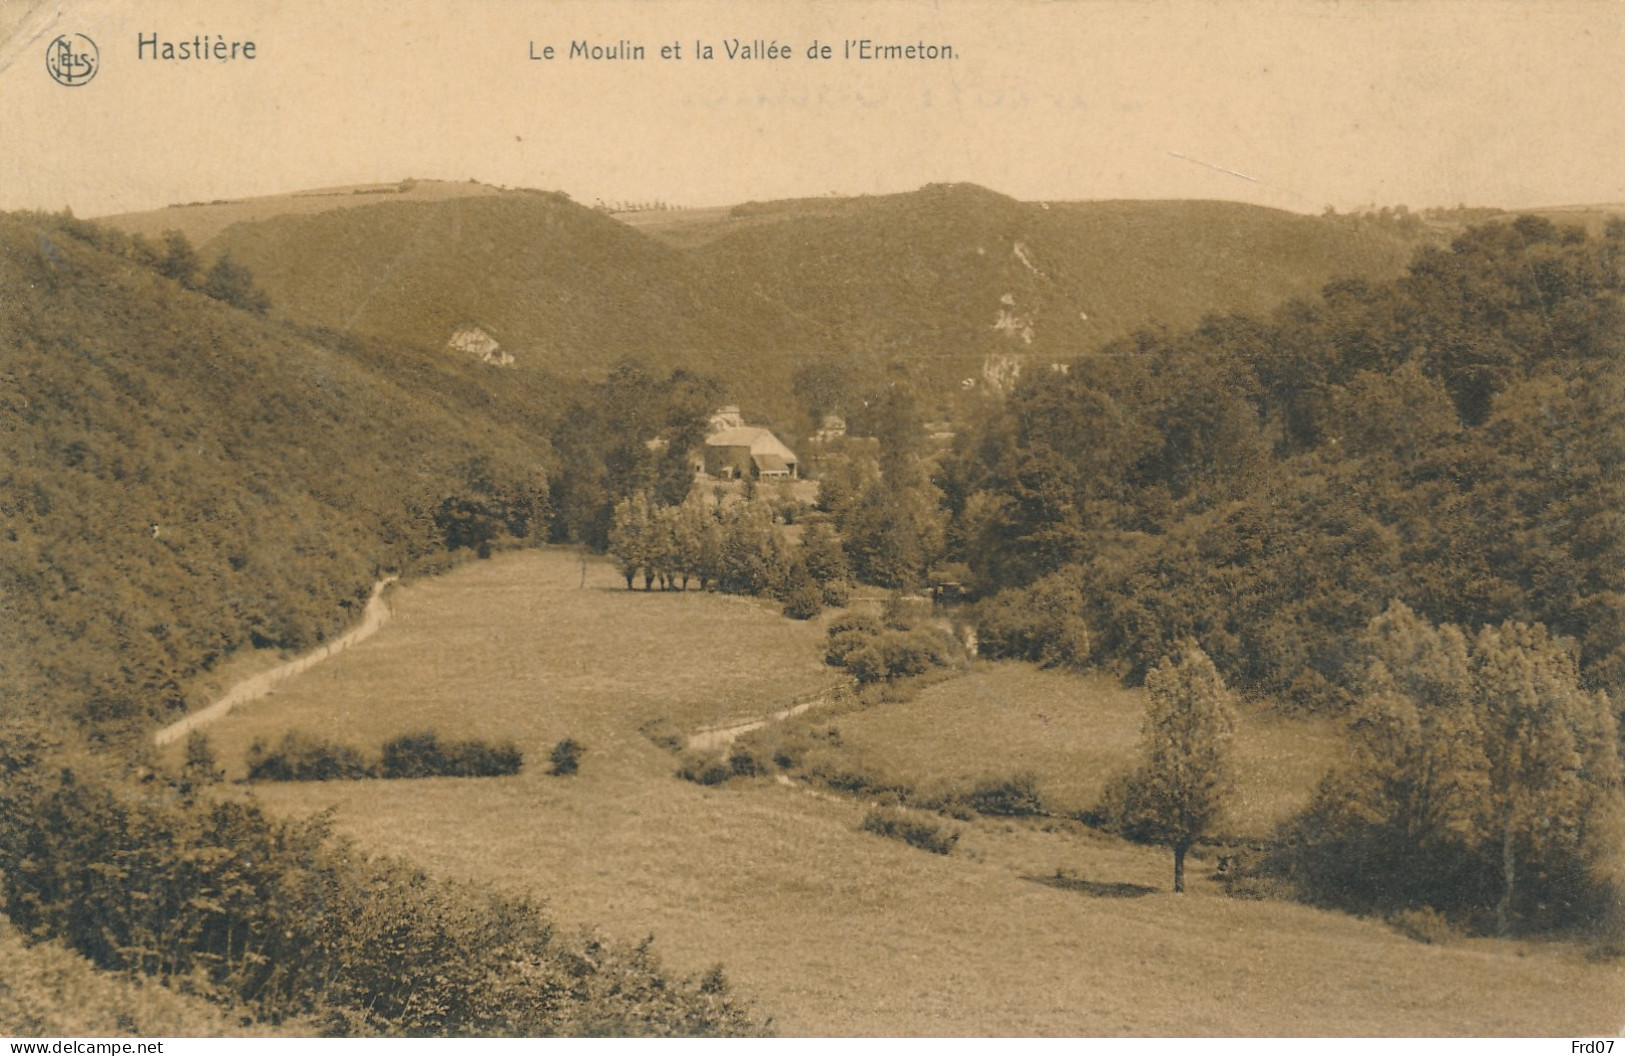 Hastère 1907 - Le Moulin Et La Vallée De L'Ermeton - Hastière